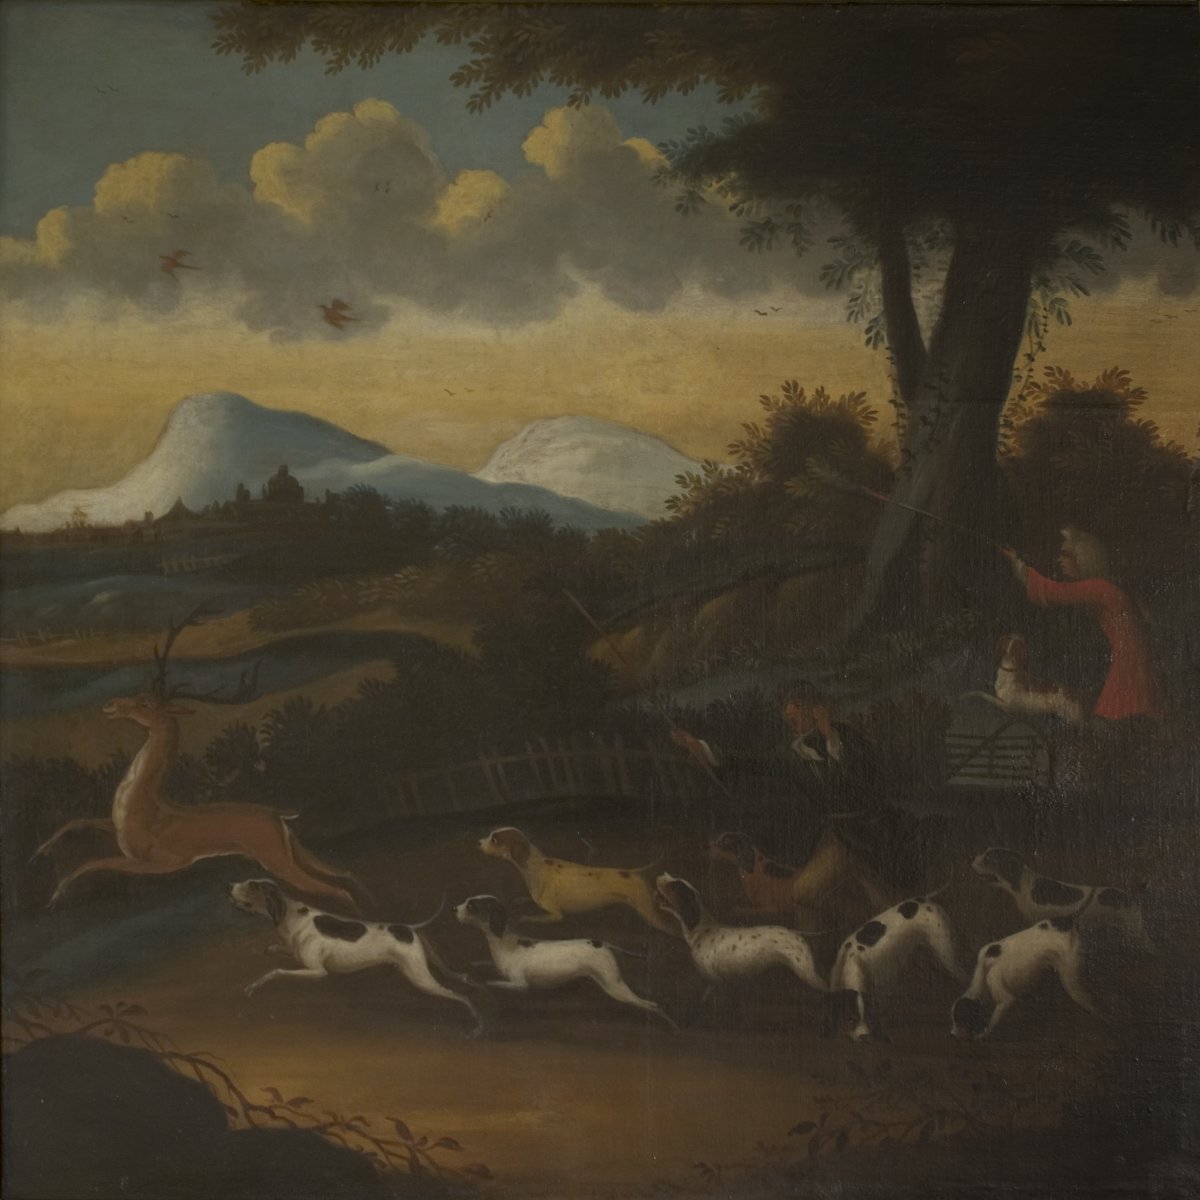 Image of Hunting Scene in Landscape